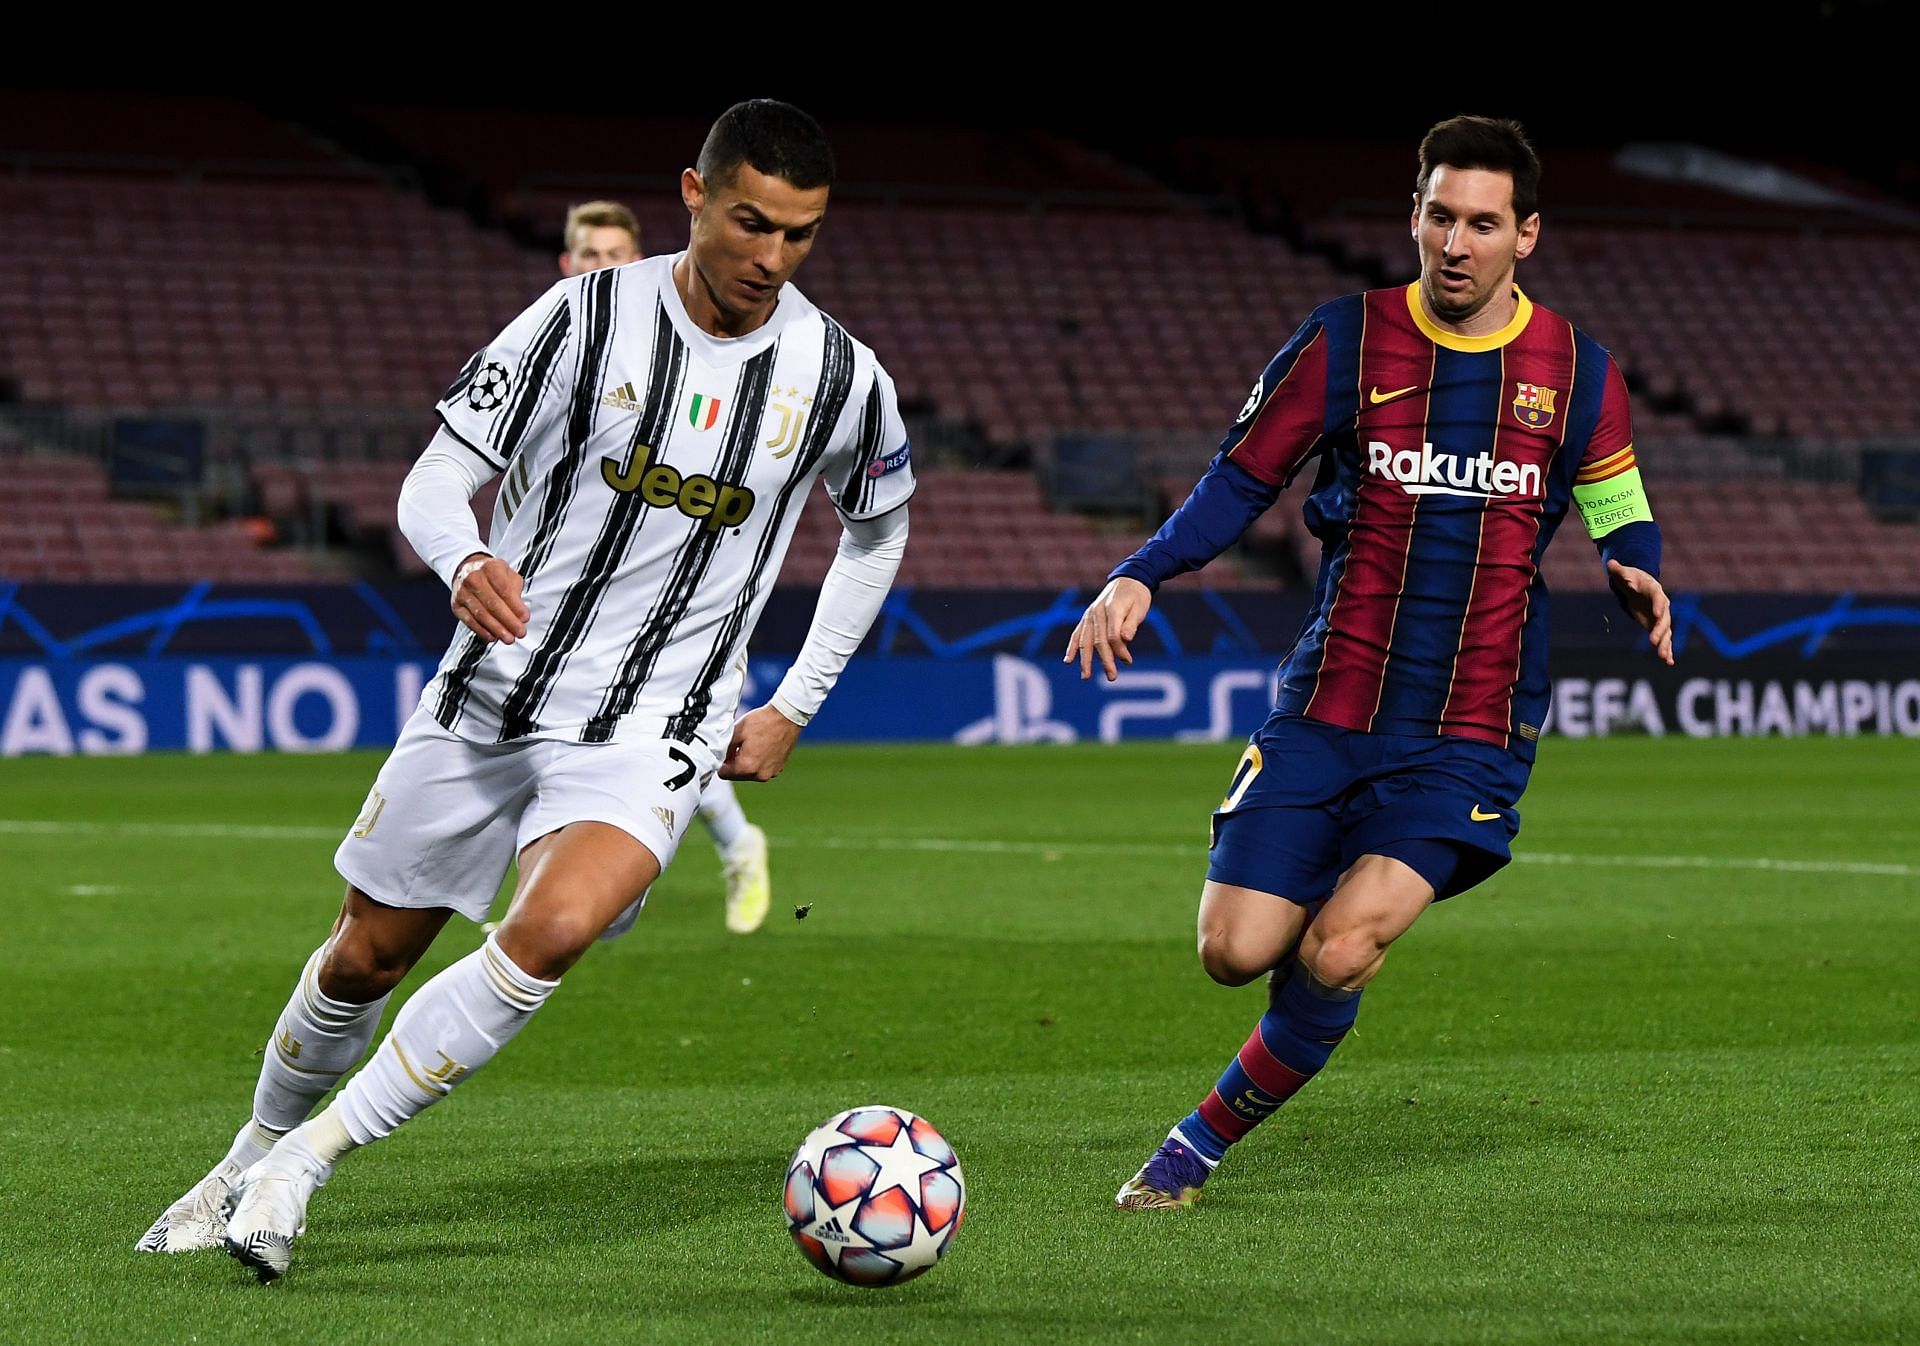 Crisriano Ronaldo (left) and Lionel Messi